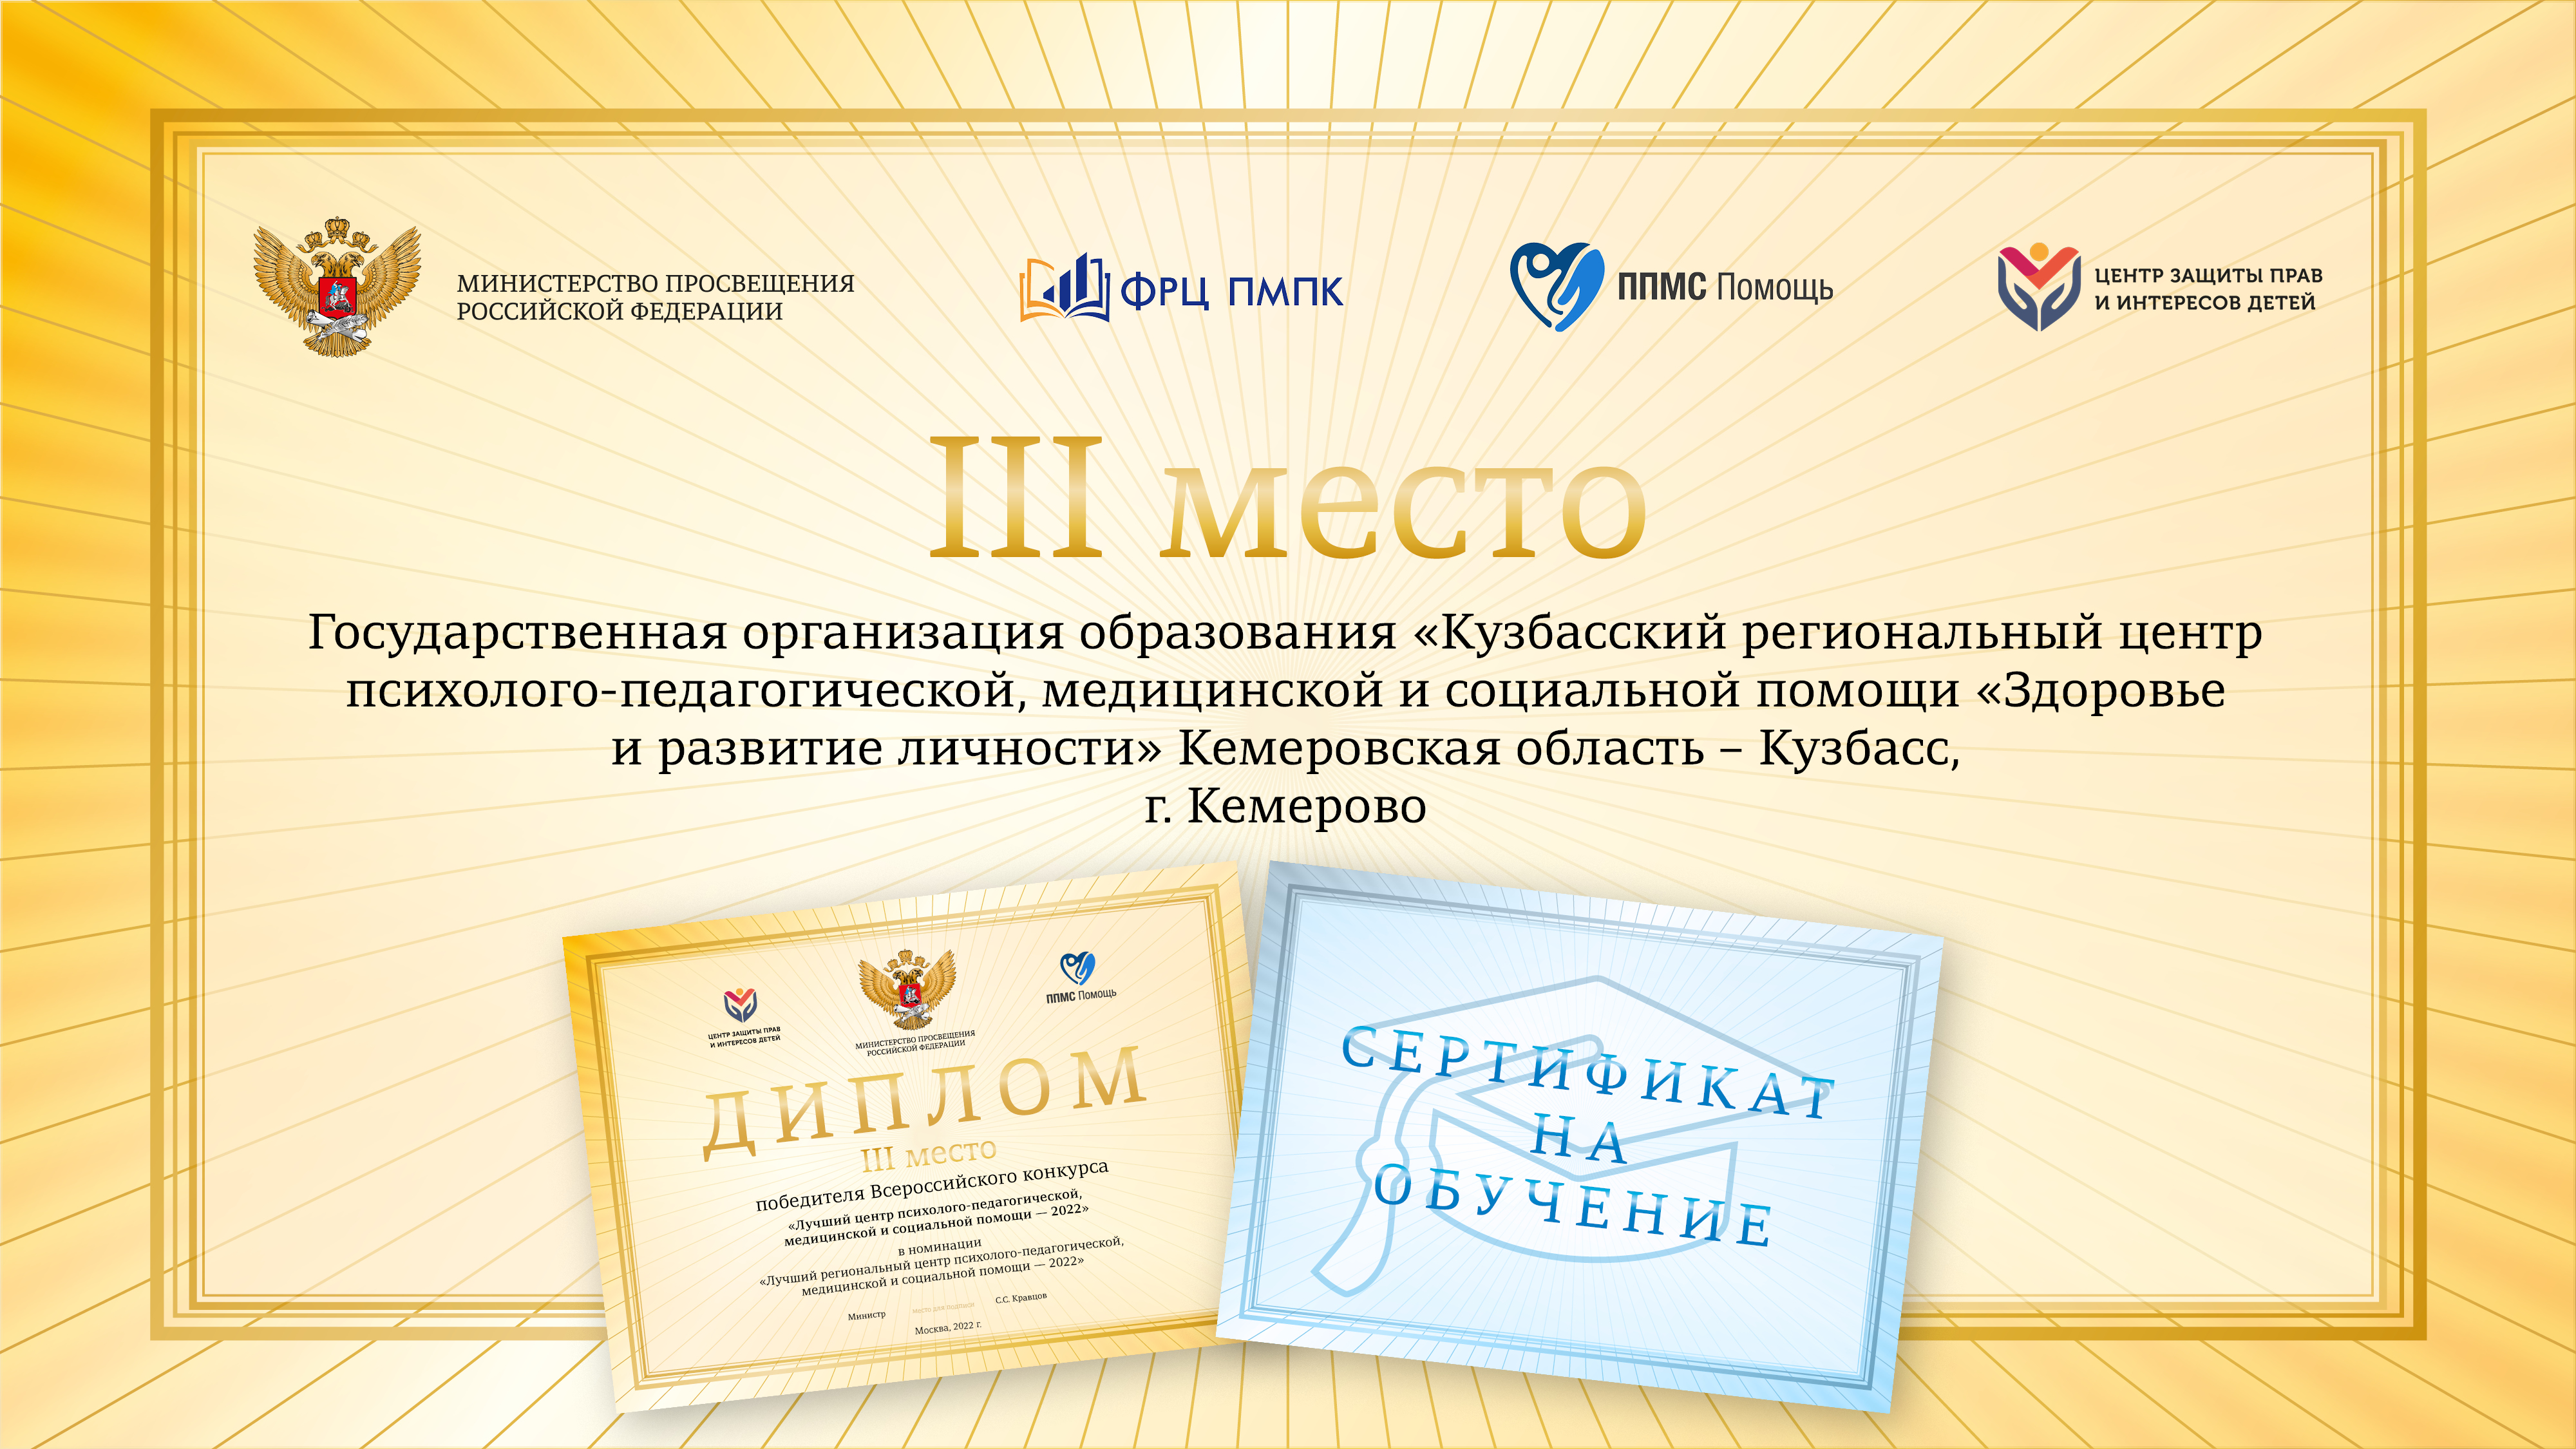 Кузбасский региональный центр «Здоровье и развитие личности» занял третье место во всероссийском конкурсе